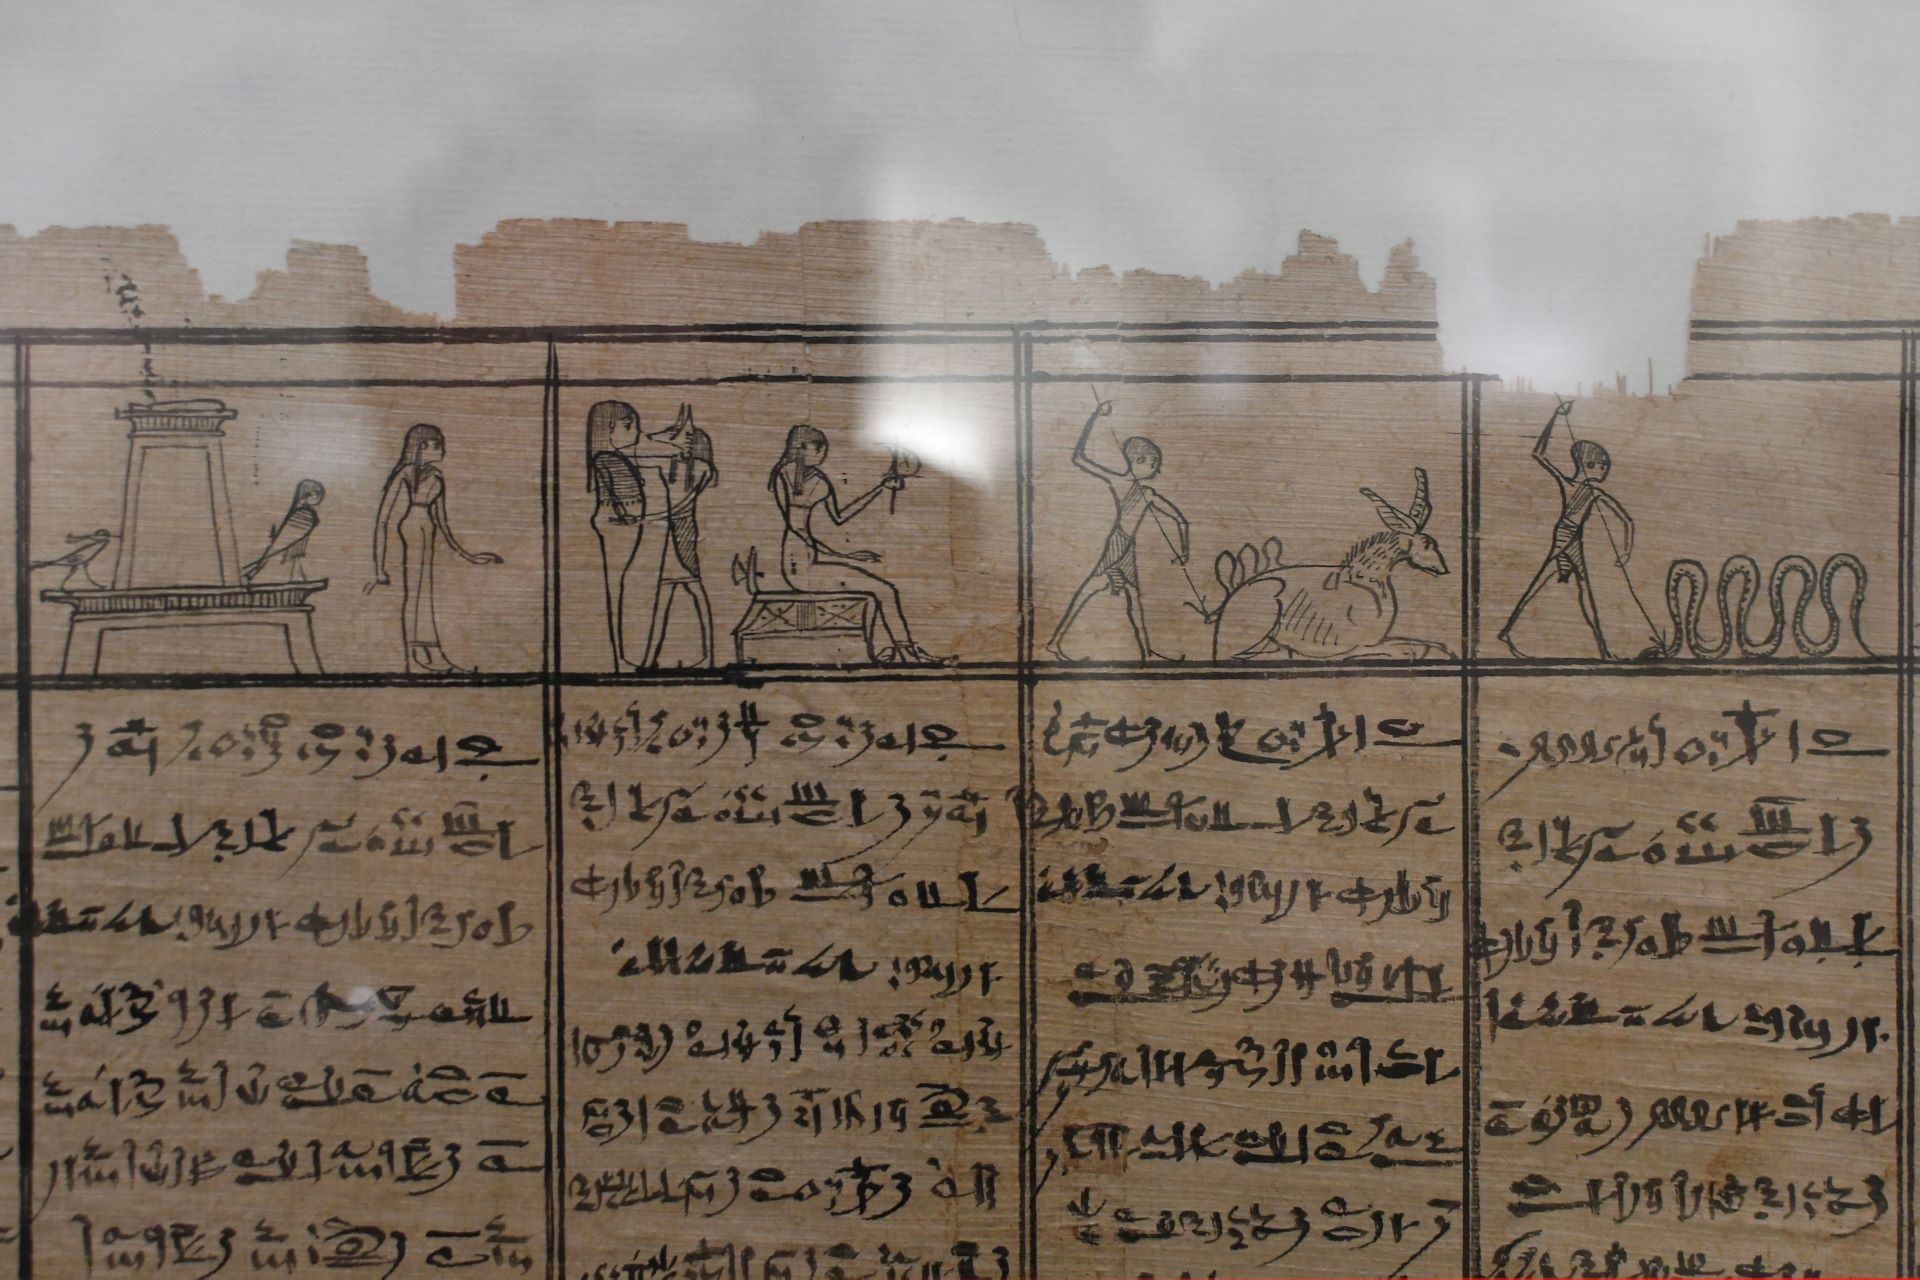 blog:2018-11-17-texte-aus-ferner-zeit:2018-11-17-wien-papyrusmuseum-060b.jpg